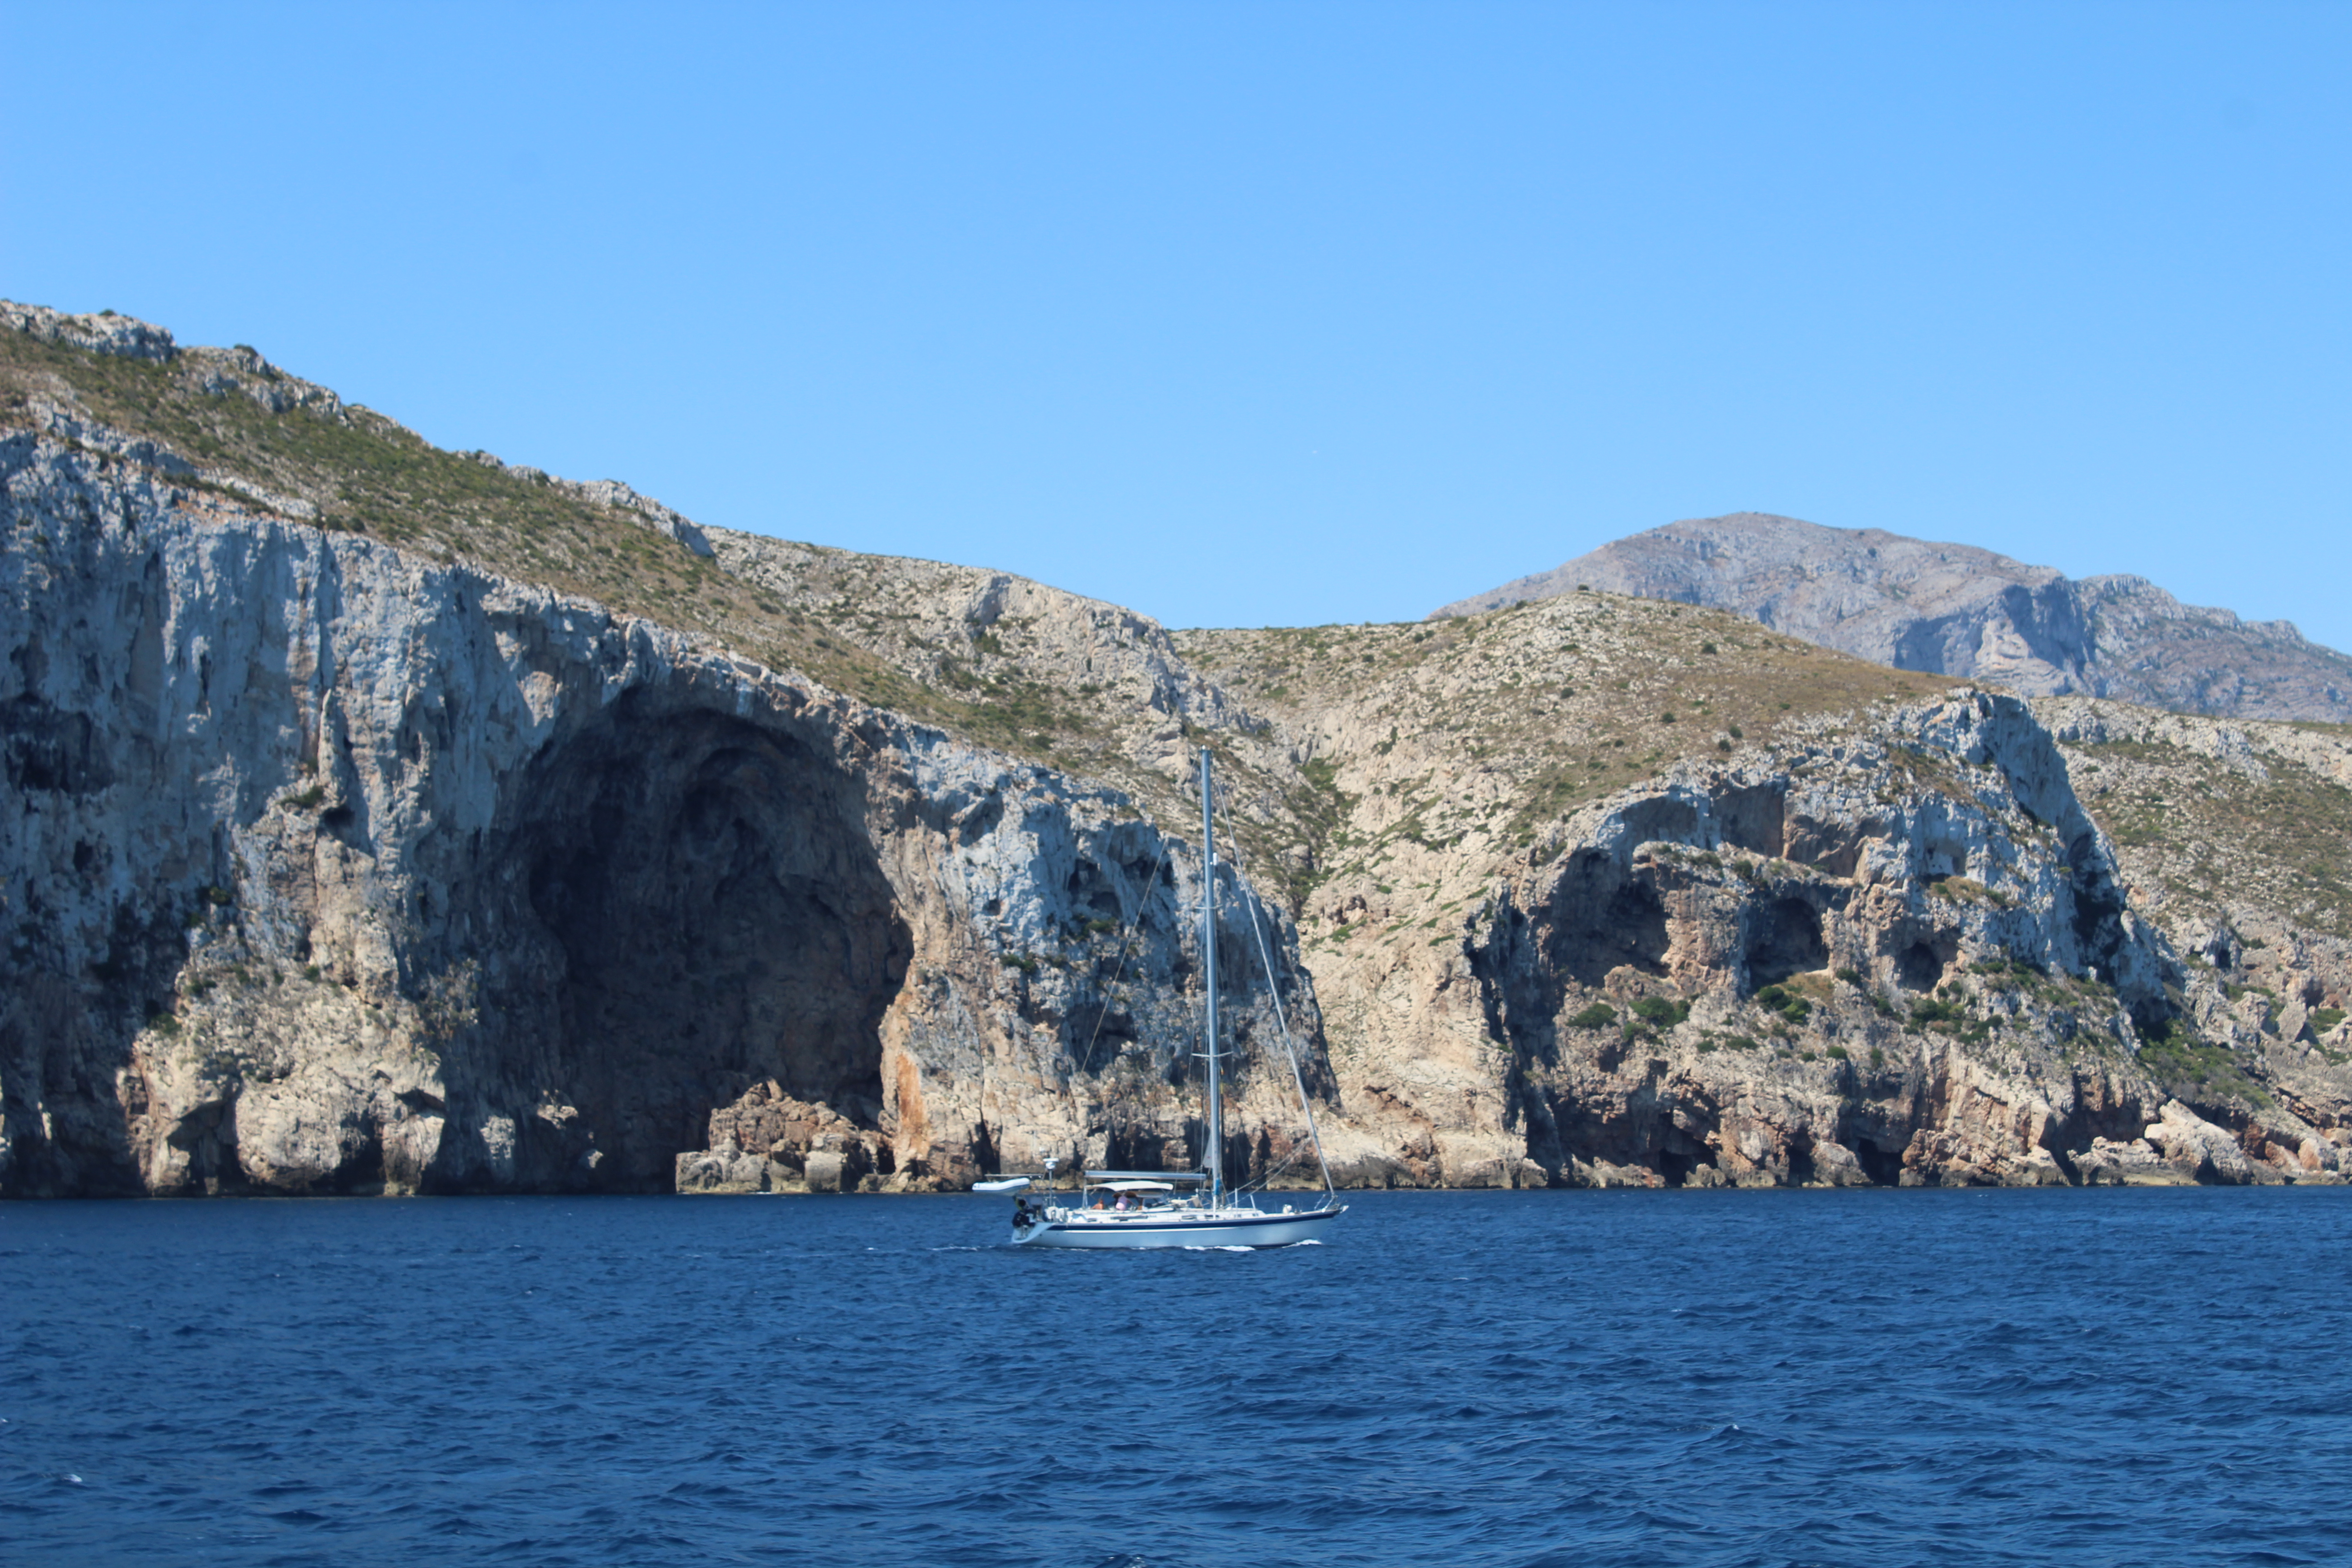  El Ministerio de Turismo concede 1 millón de euros al programa 'Vive la posidonia' presentado por los ayuntamientos de Dénia, Eivissa y Cambrils a las ayudas de los fondos Next Generation 